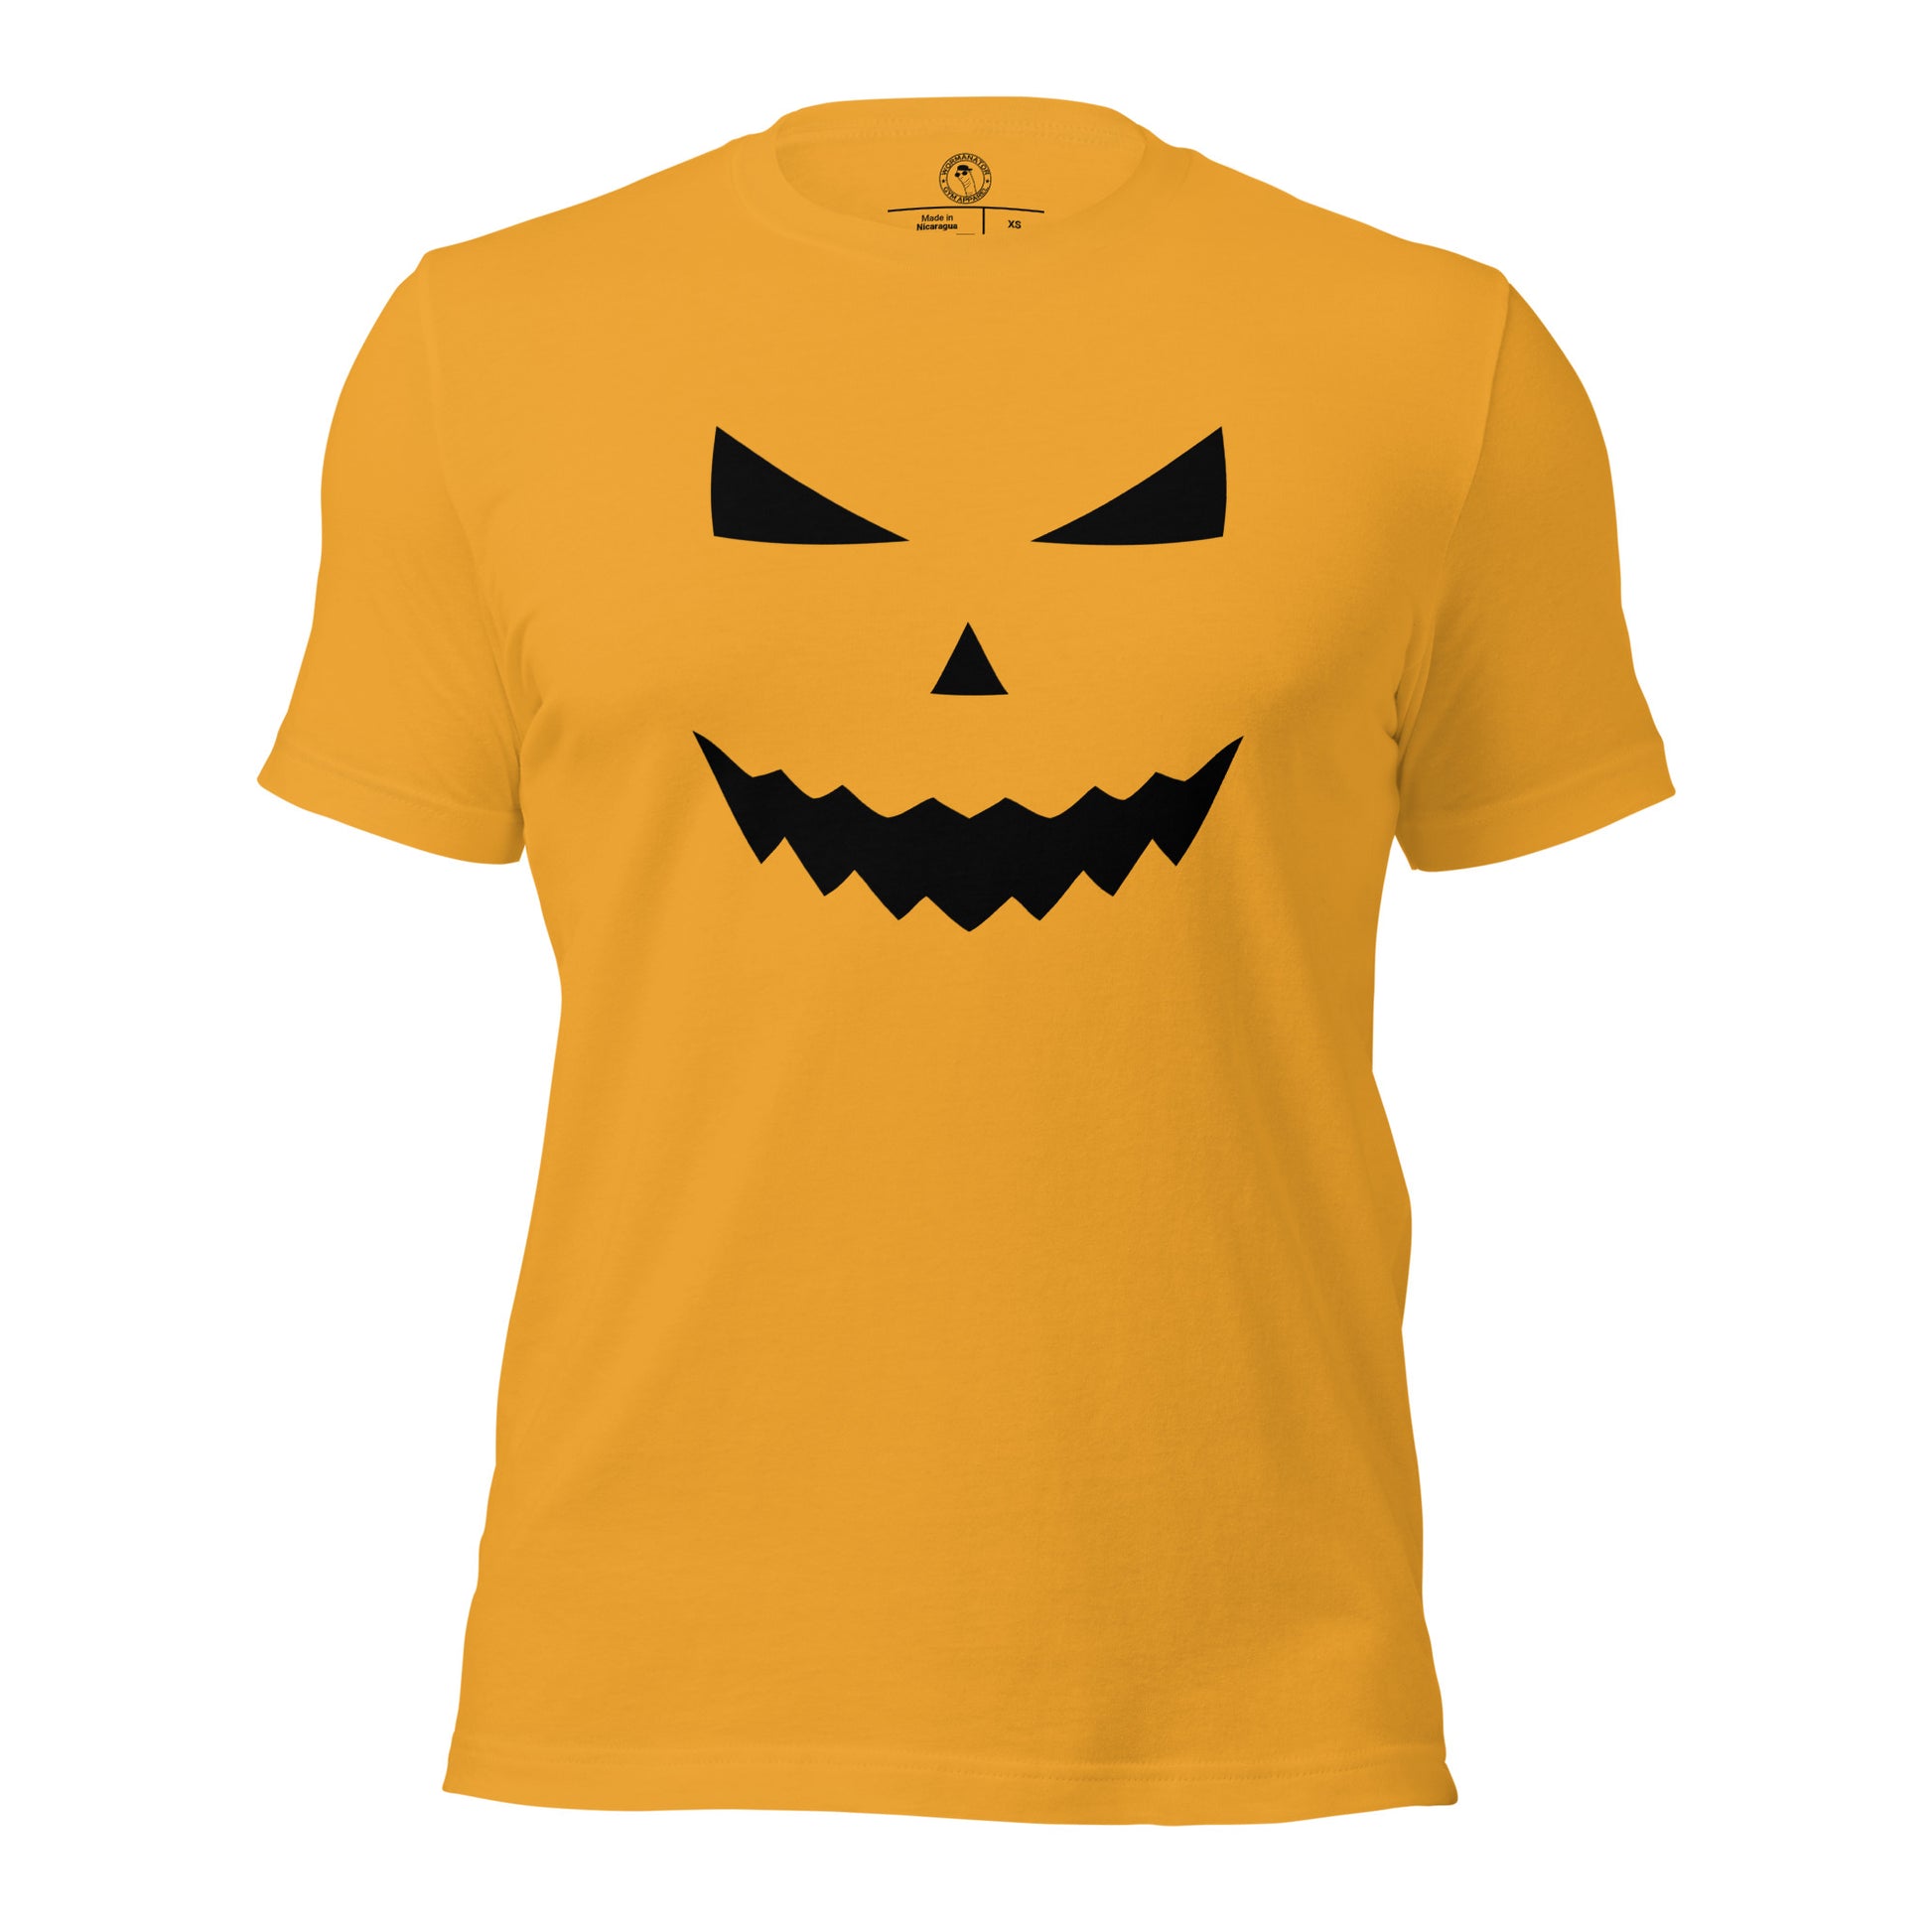 Halloween Pumpkin Shirt in Mustard